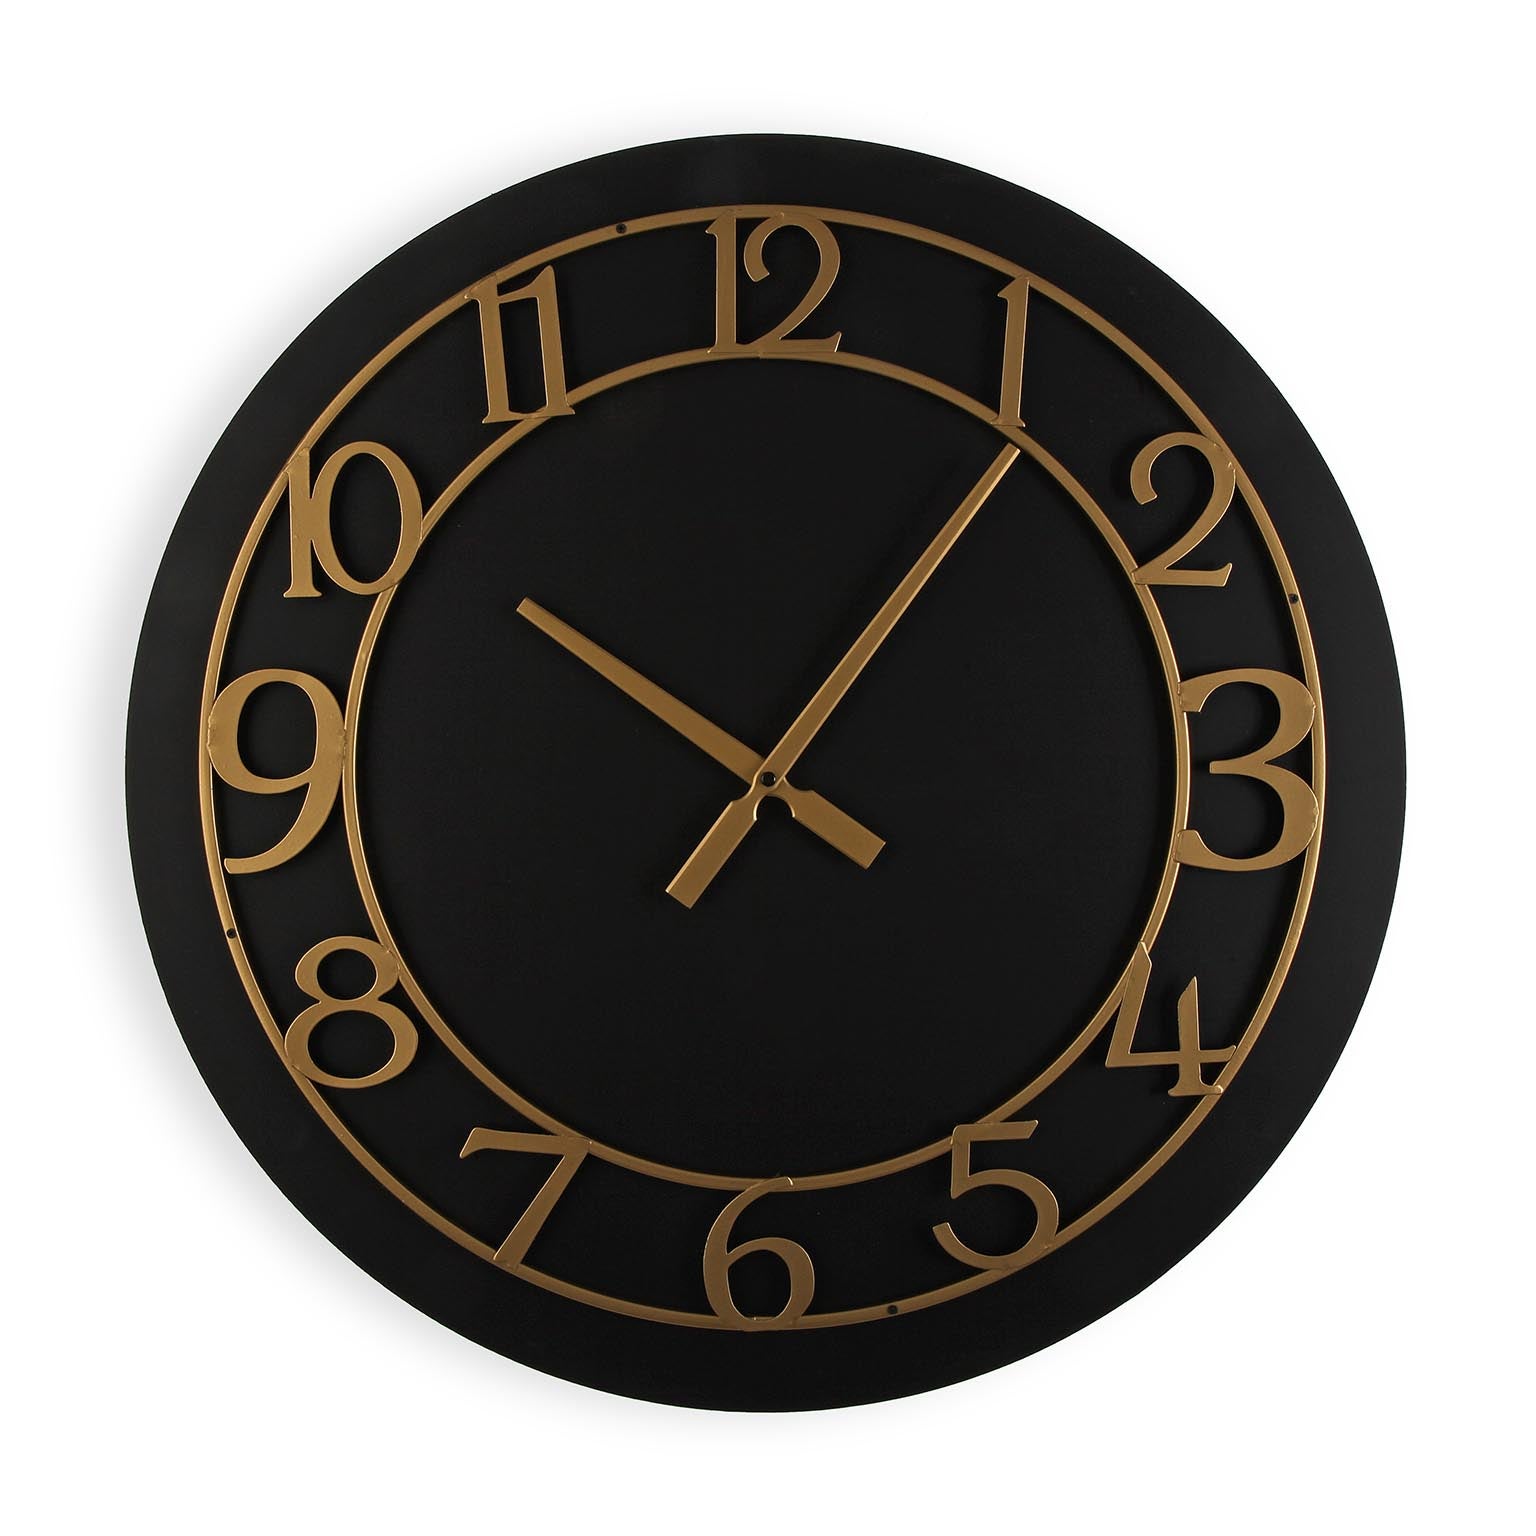 Versa beattyville reloj de pared decorativo para la cocina, el salón, el comedor o la habitación, negro y dorado, 60x4,5x60cm